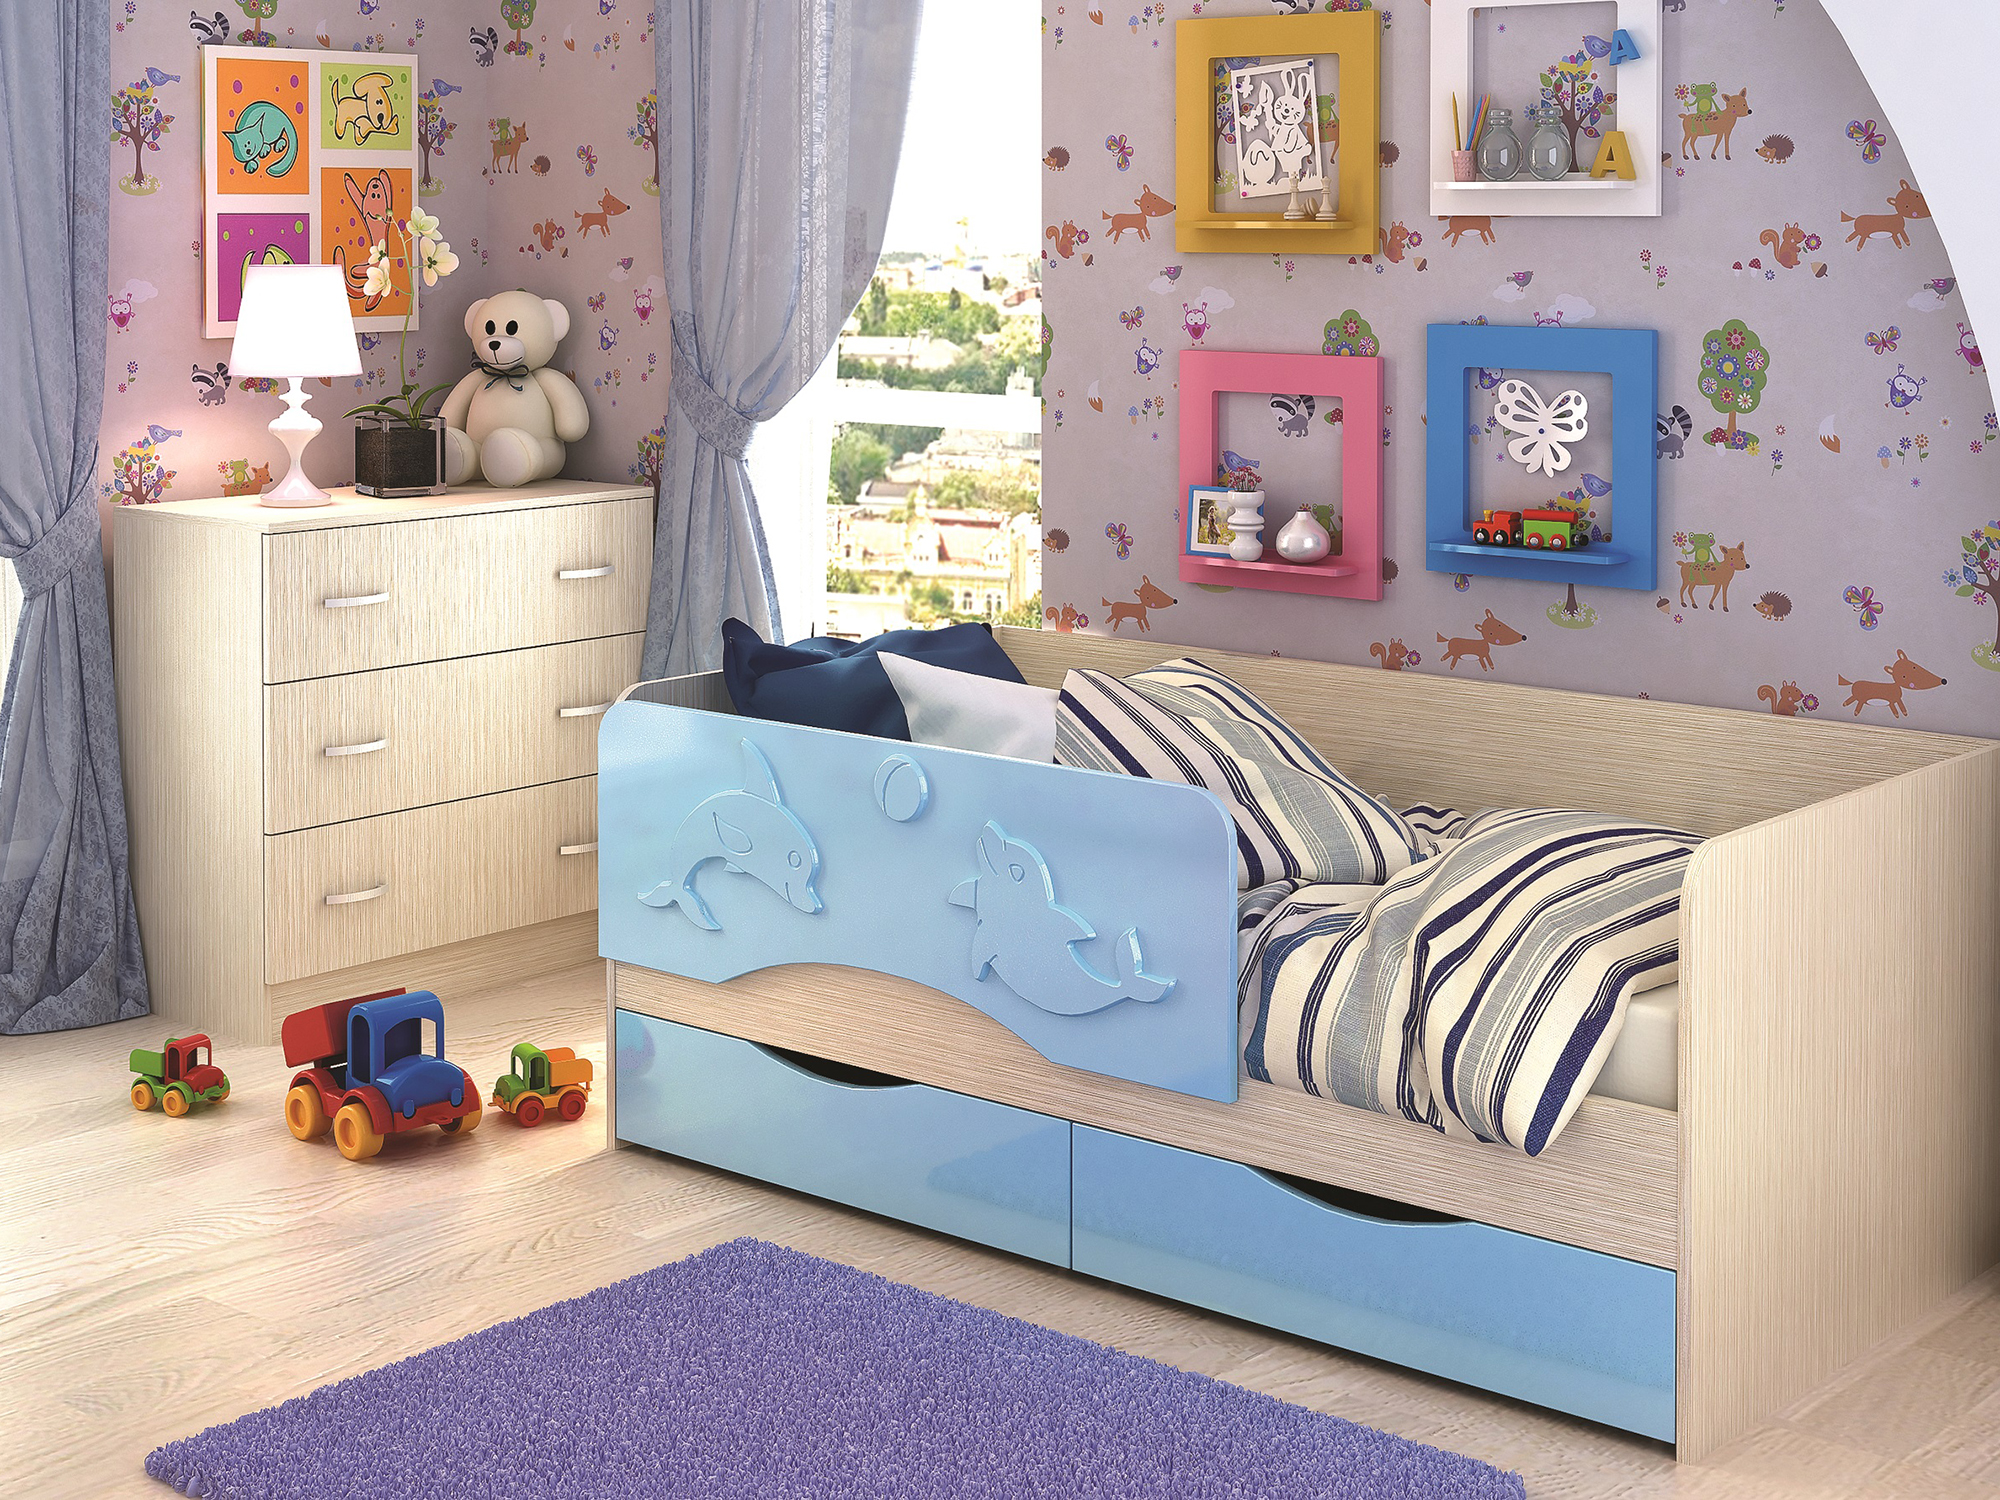 Кровать Алиса (80х160) Голубой, Бежевый, МДФ, ЛДСП кровать алиса 80х160 сиреневый фиолетовый бежевый мдф лдсп